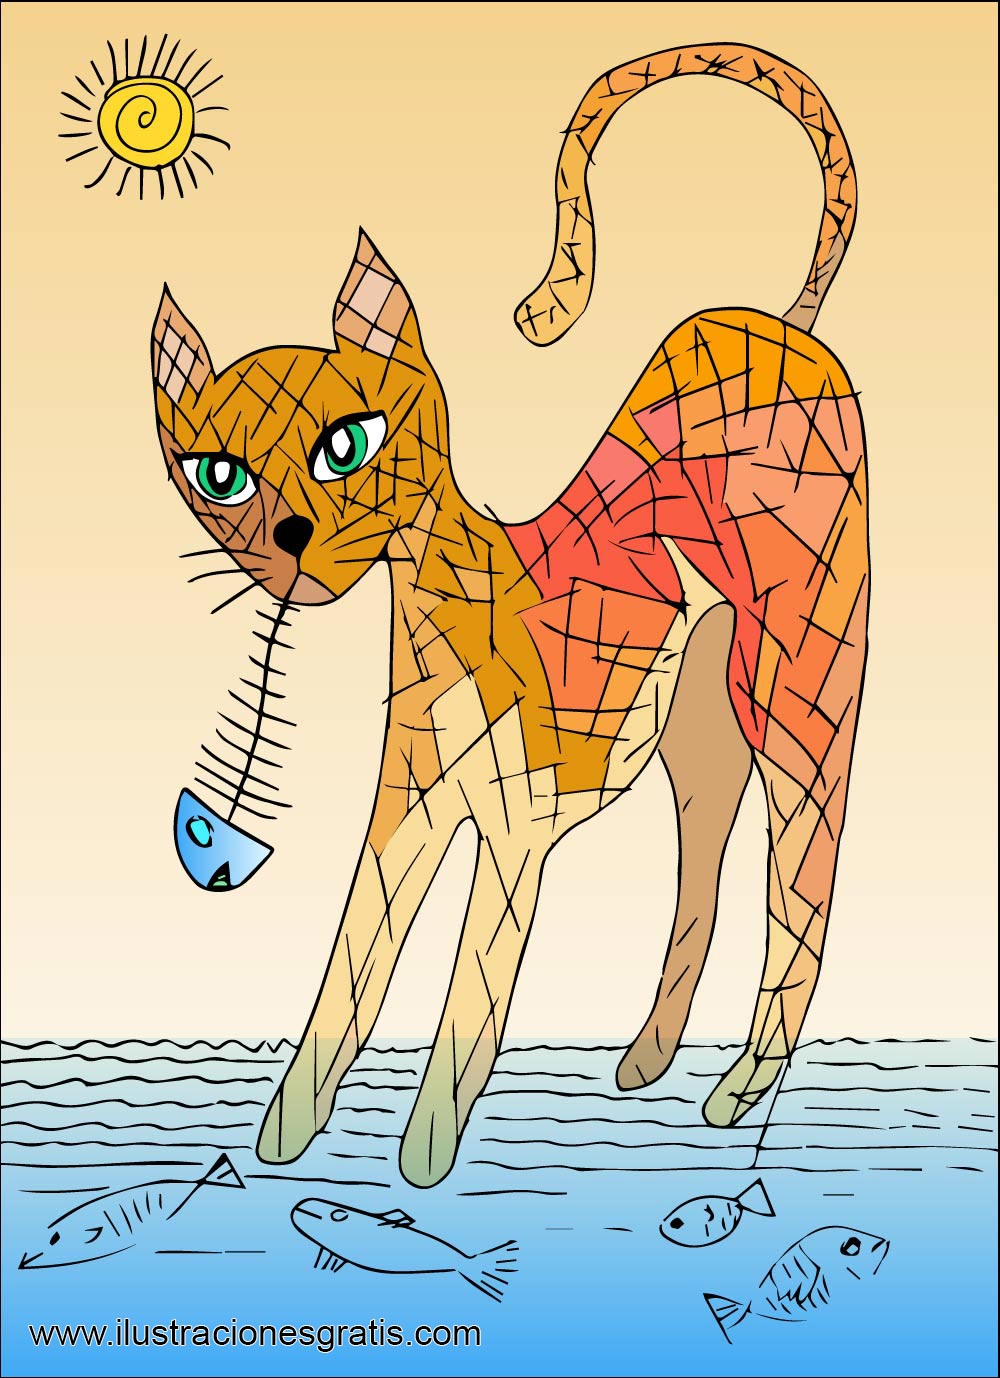 Ilustración gratis - El gato espabilao